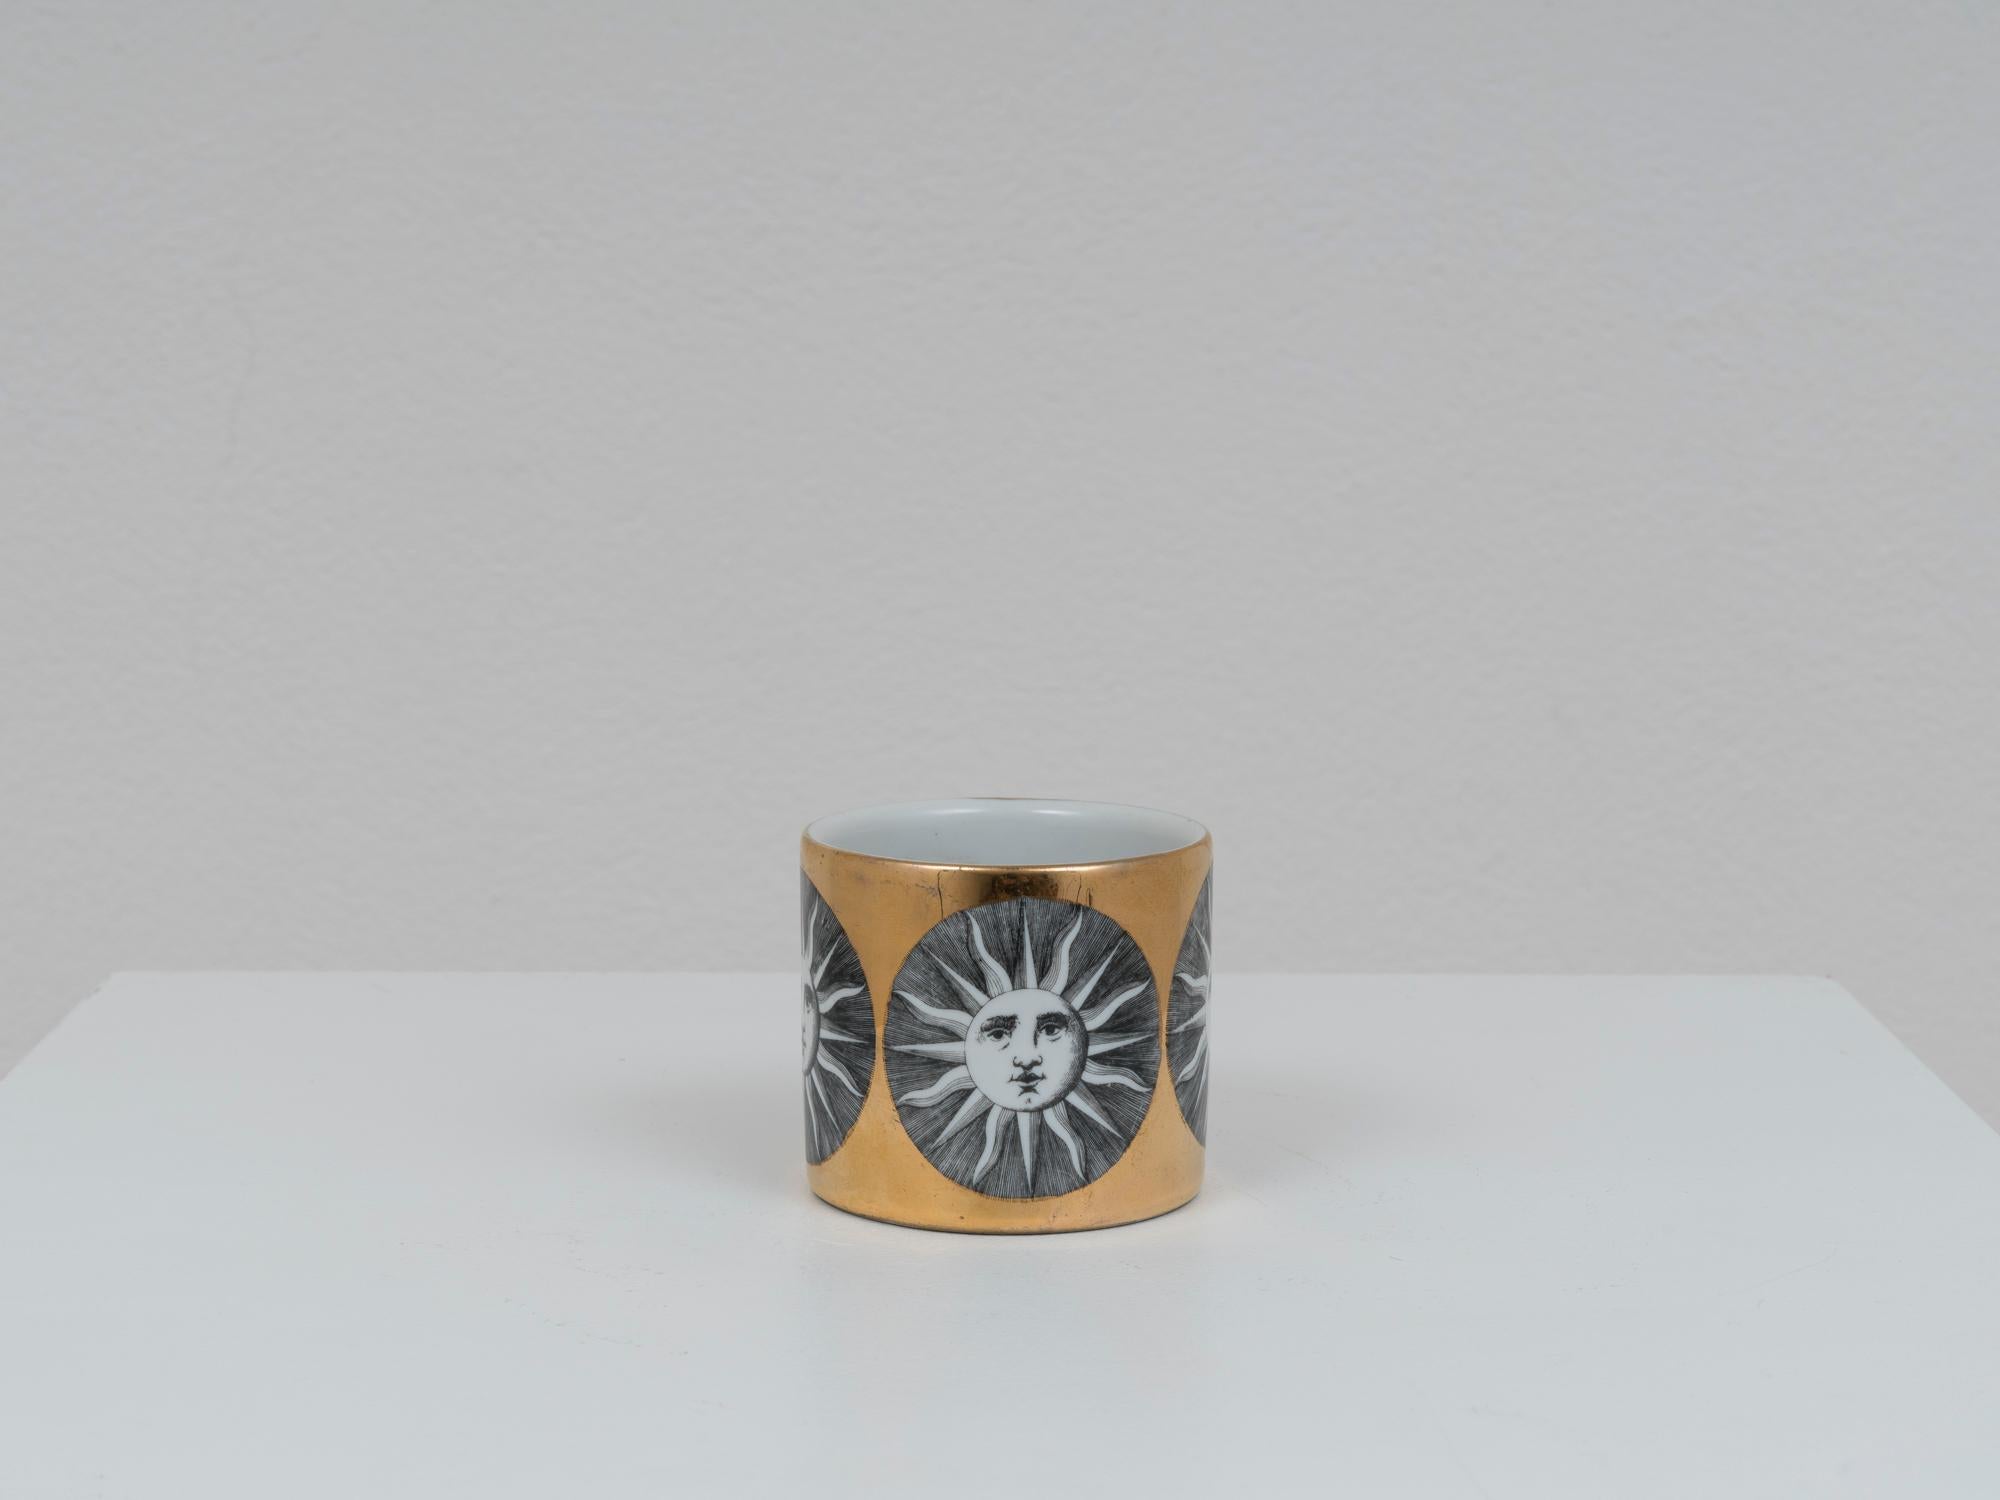 Schöner Bleistifthalter oder kleine Vase von Piero Fornasetti, aus vergoldeter, glasierter Keramik. Dieses Stück stammt aus der Produktion der Designer aus den 1950er Jahren. Ikonisches 